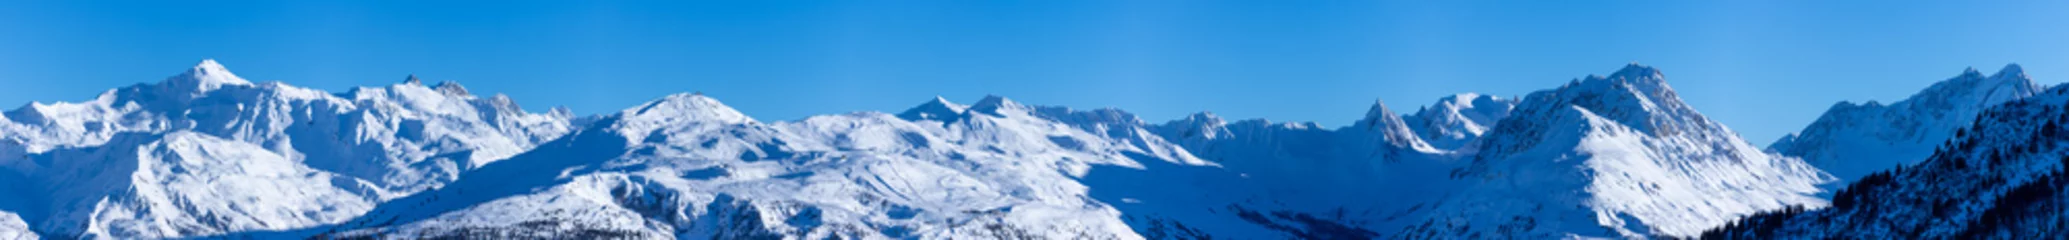 Tuinposter vue ultra panoramique sur une chaîne de montagnes enneigées des alpes © Tof - Photographie